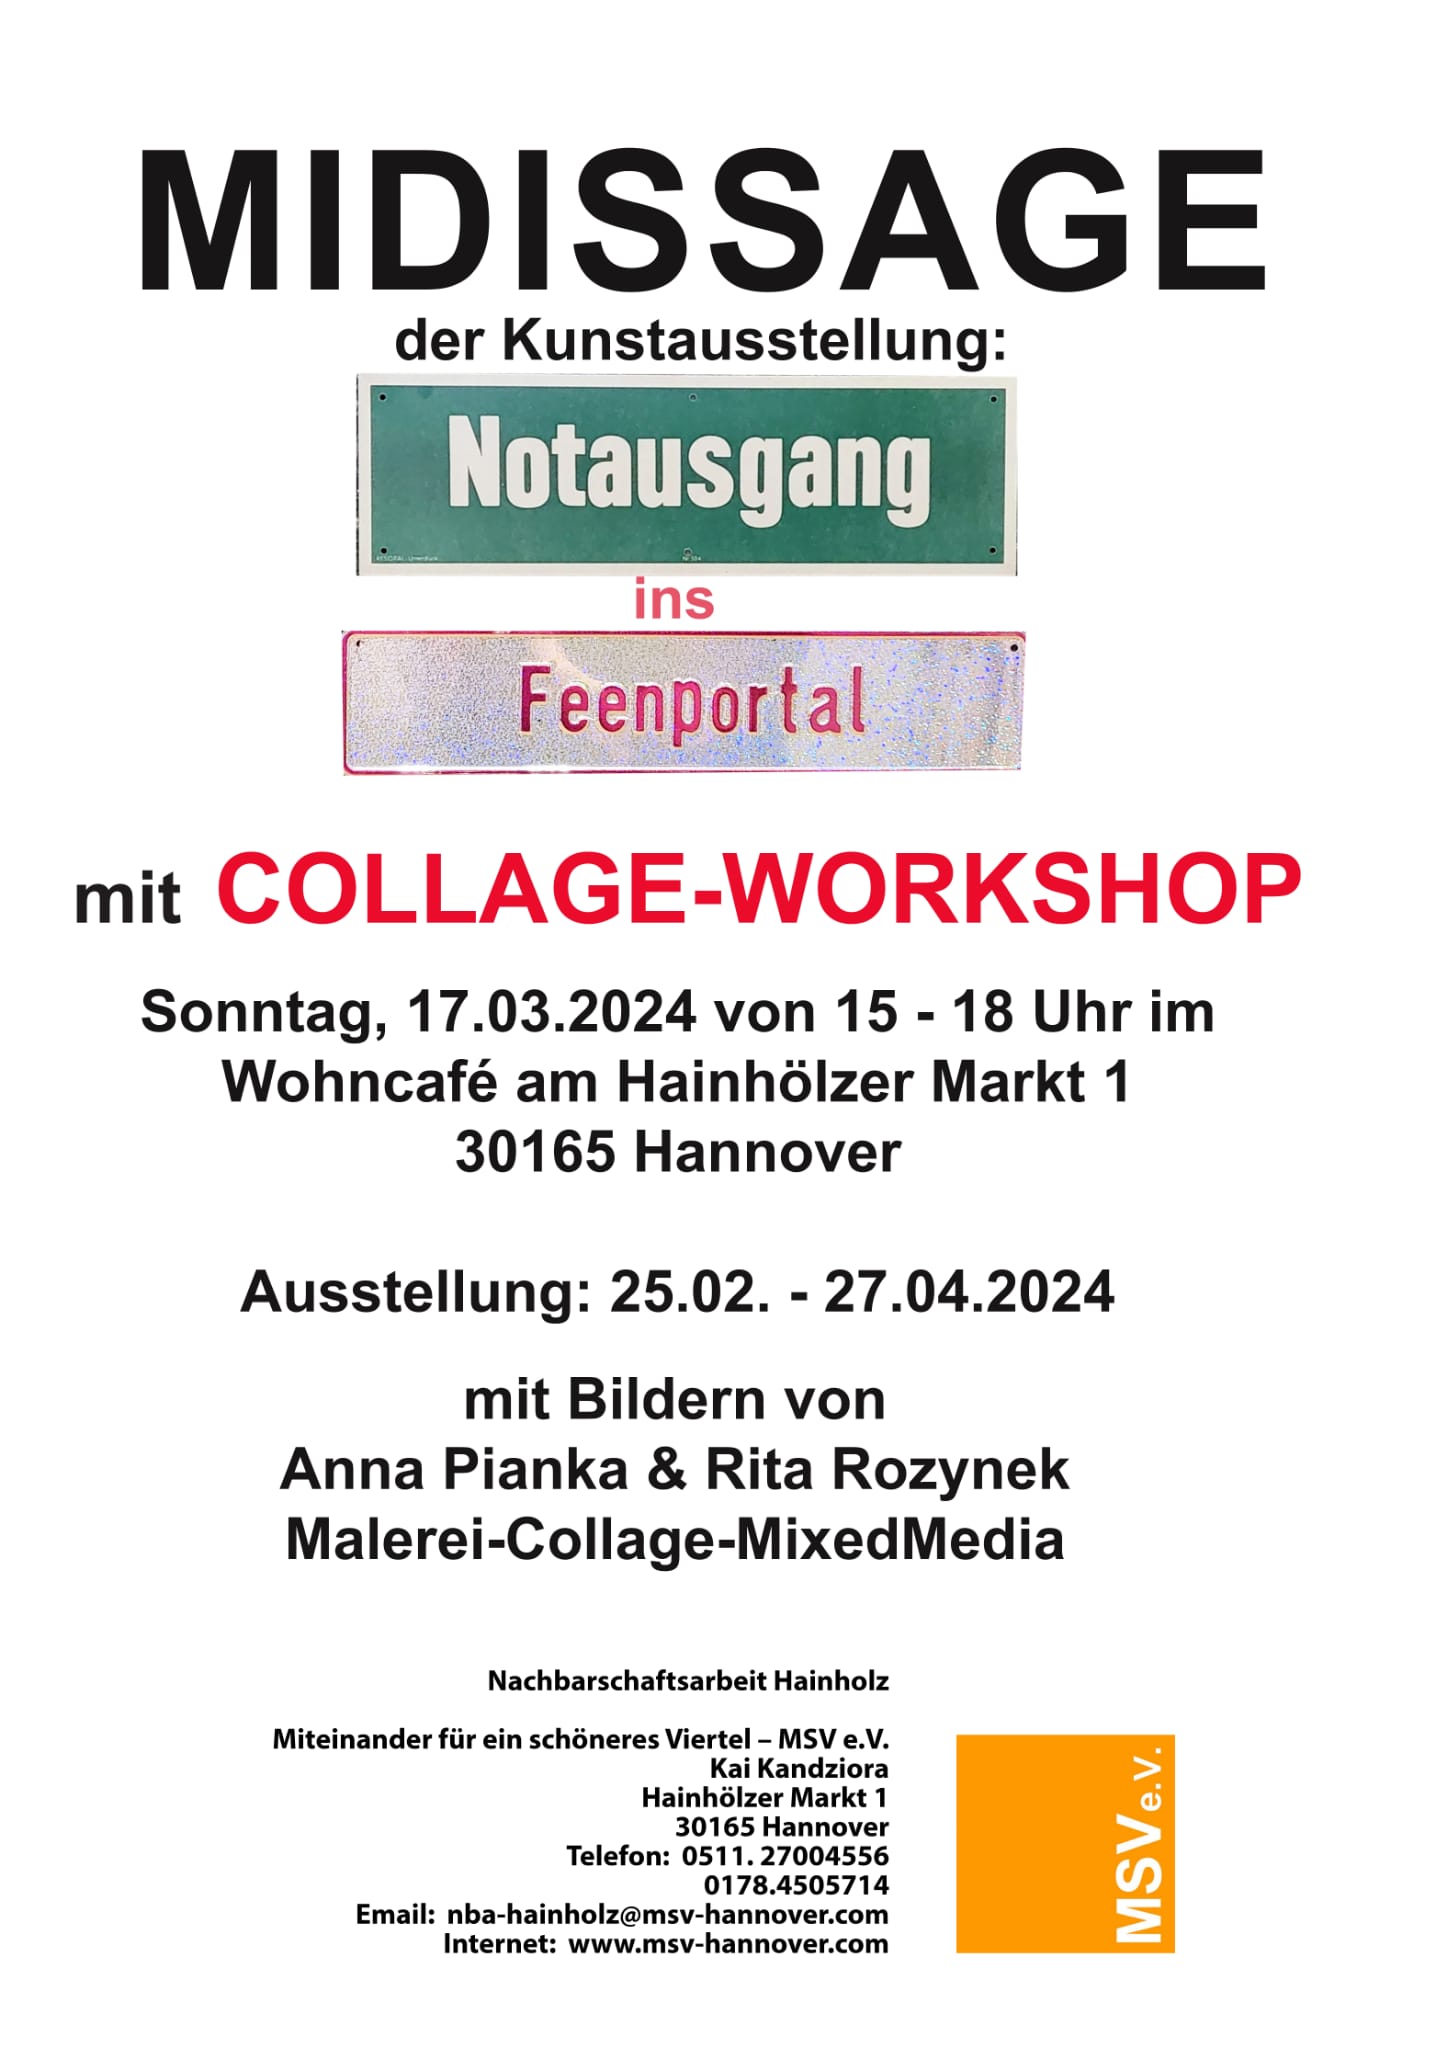 Kunstausstellung “Notausgang ins Feenportal” Midissage mit Collagen-Workshop am 17.03.2024 in Hannover